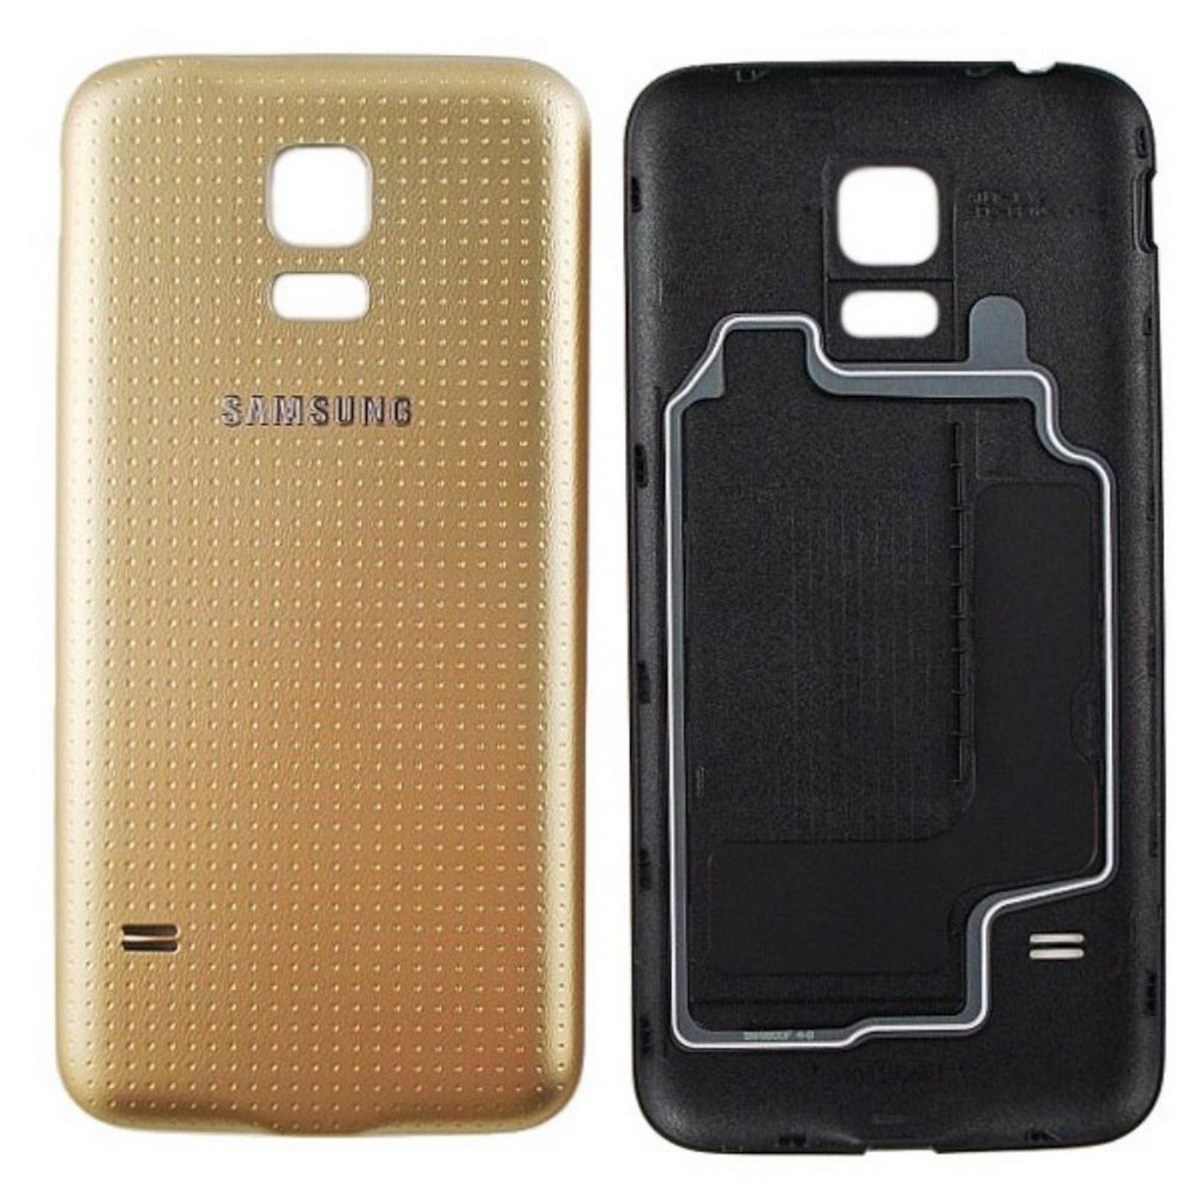 Samsung s5 mini купить. Samsung Galaxy s5 Mini SM-g800f. Samsung s5 Mini крышка. Samsung Galaxy s5 крышки. Samsung s5 Mini NFC.